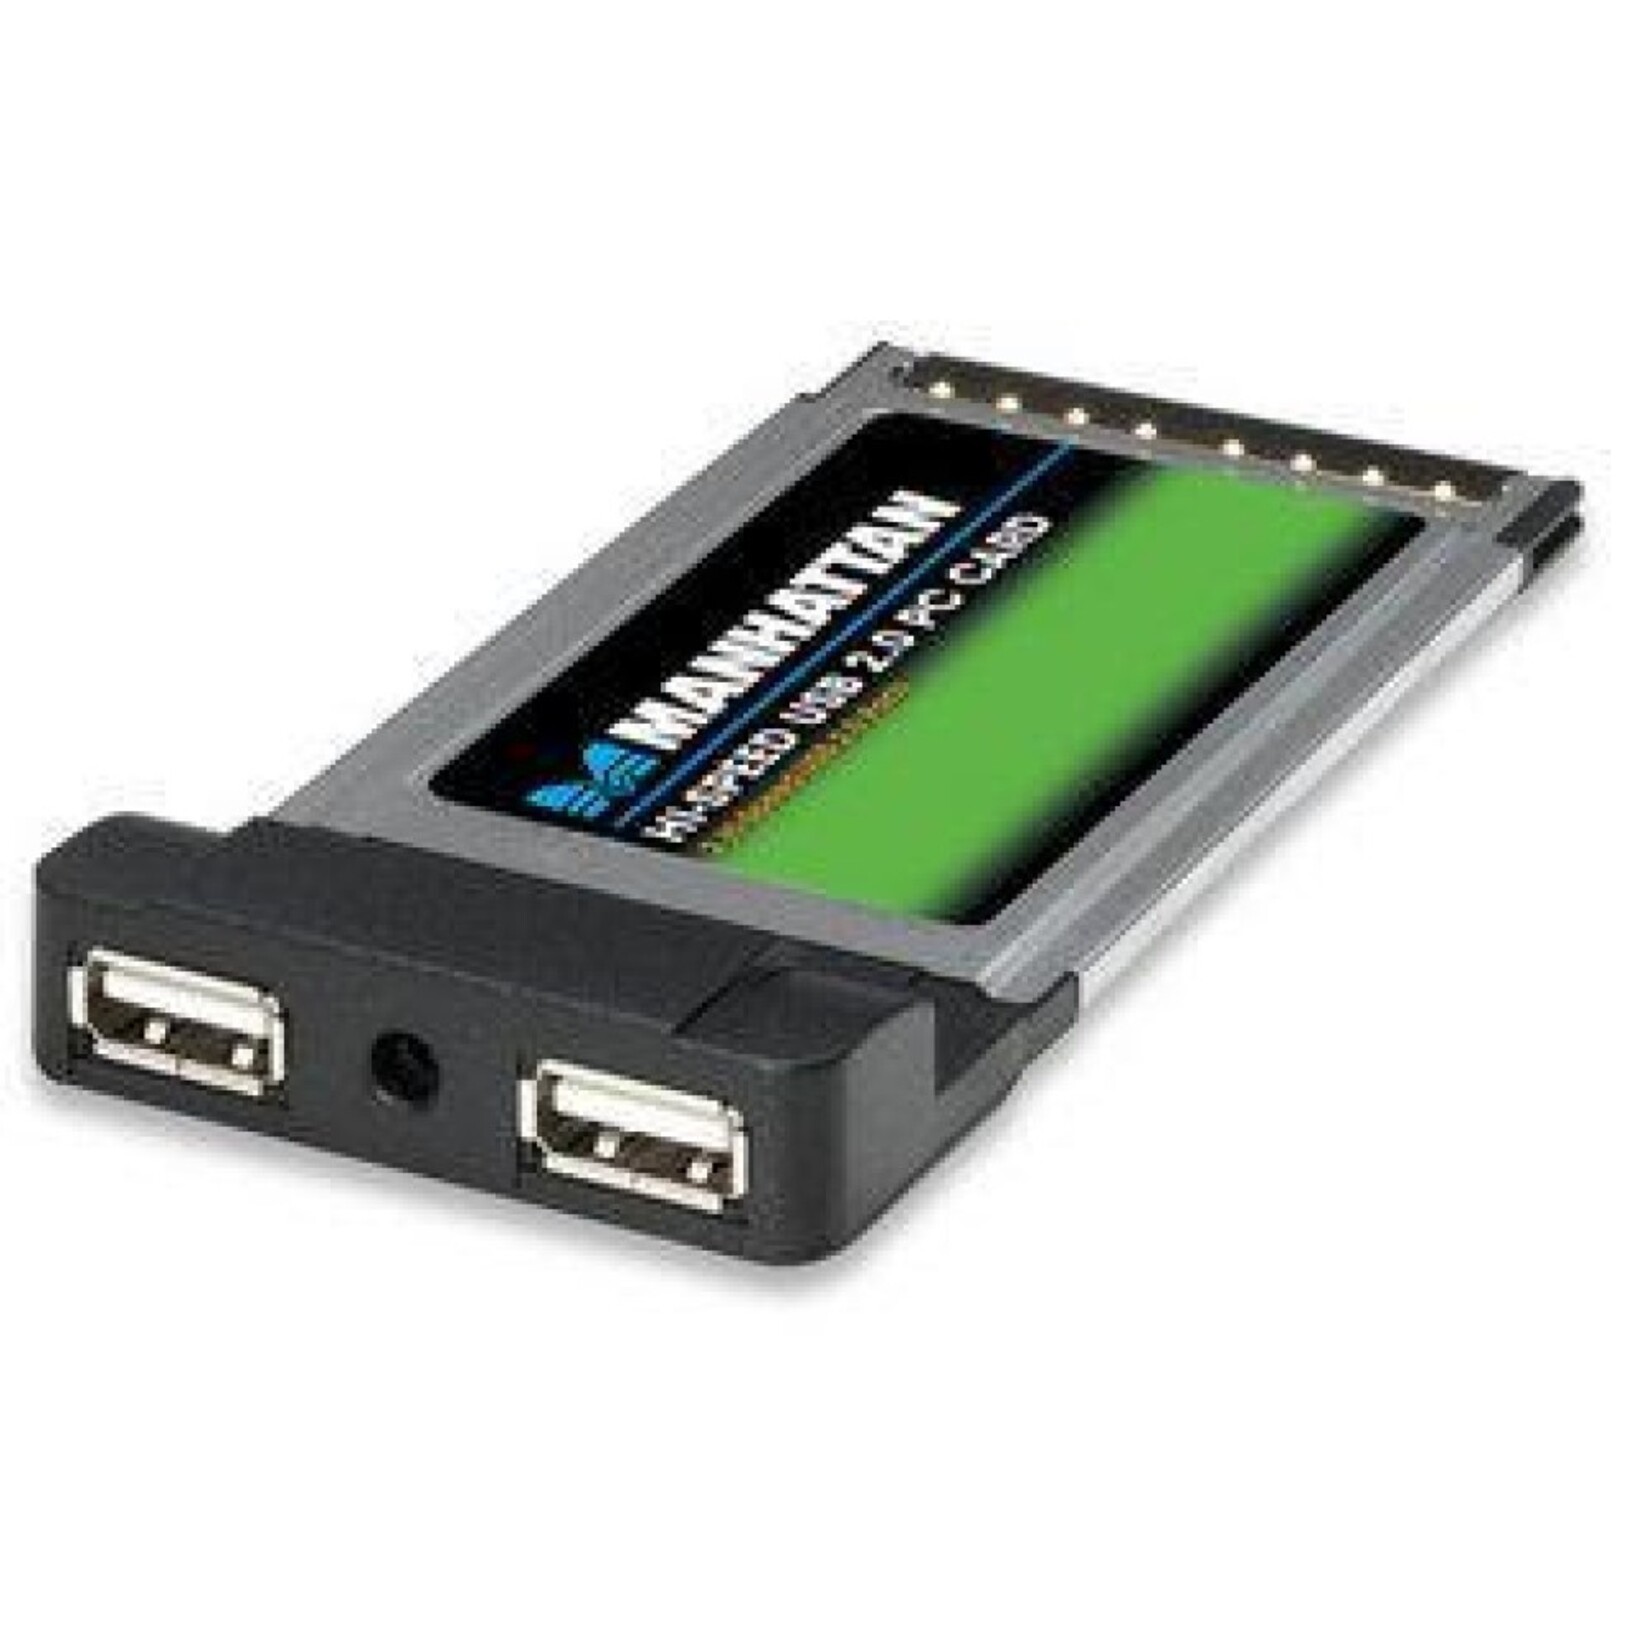 PCMCIA Hi-Speed USB 2.0 Card